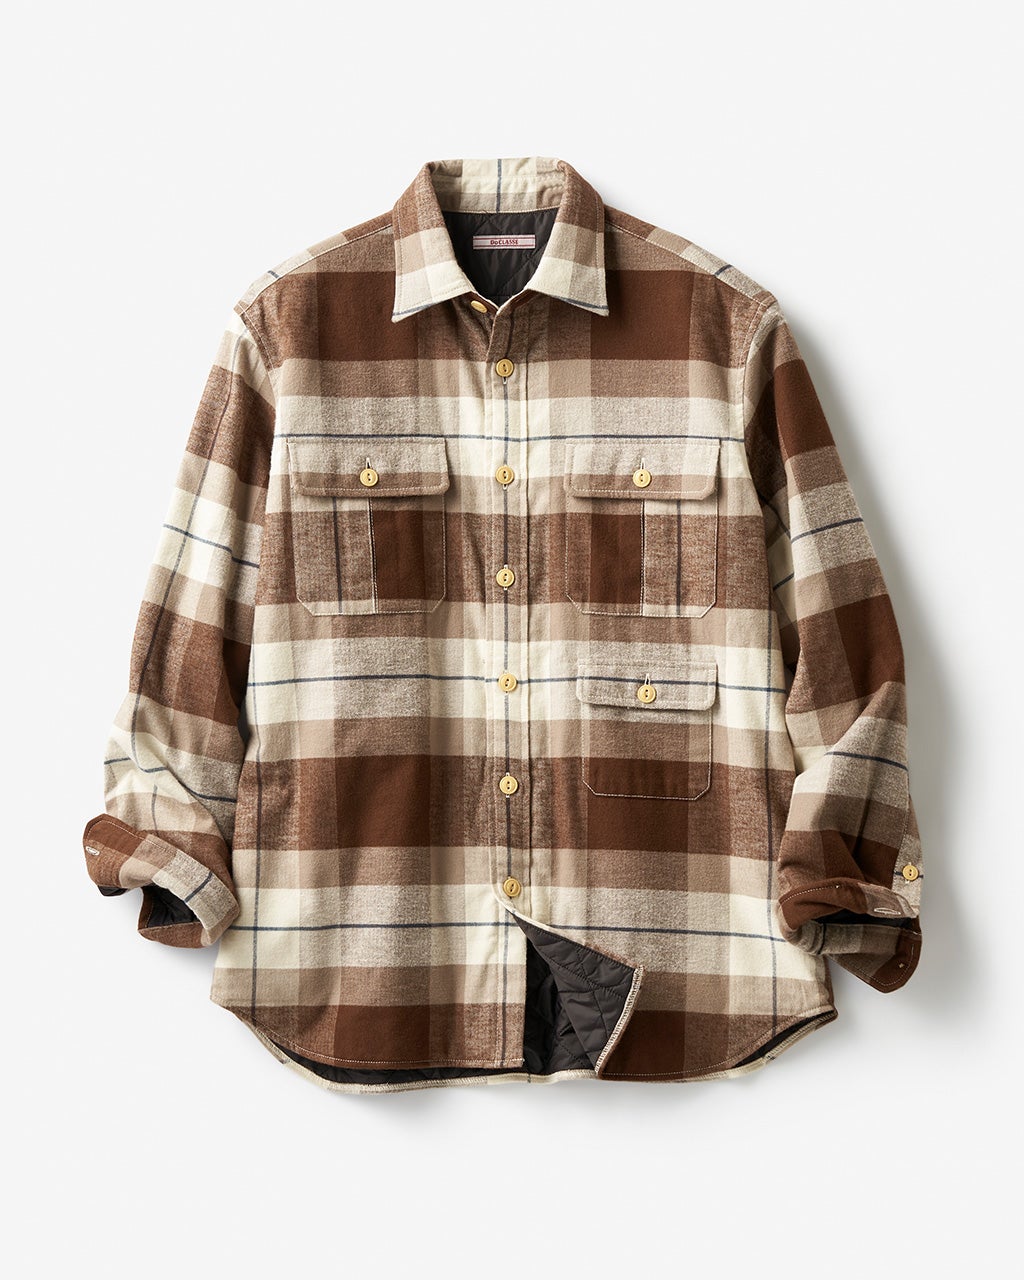 中綿フランネルシャツ/40代50代からのメンズファッション通販 DoCLASSE